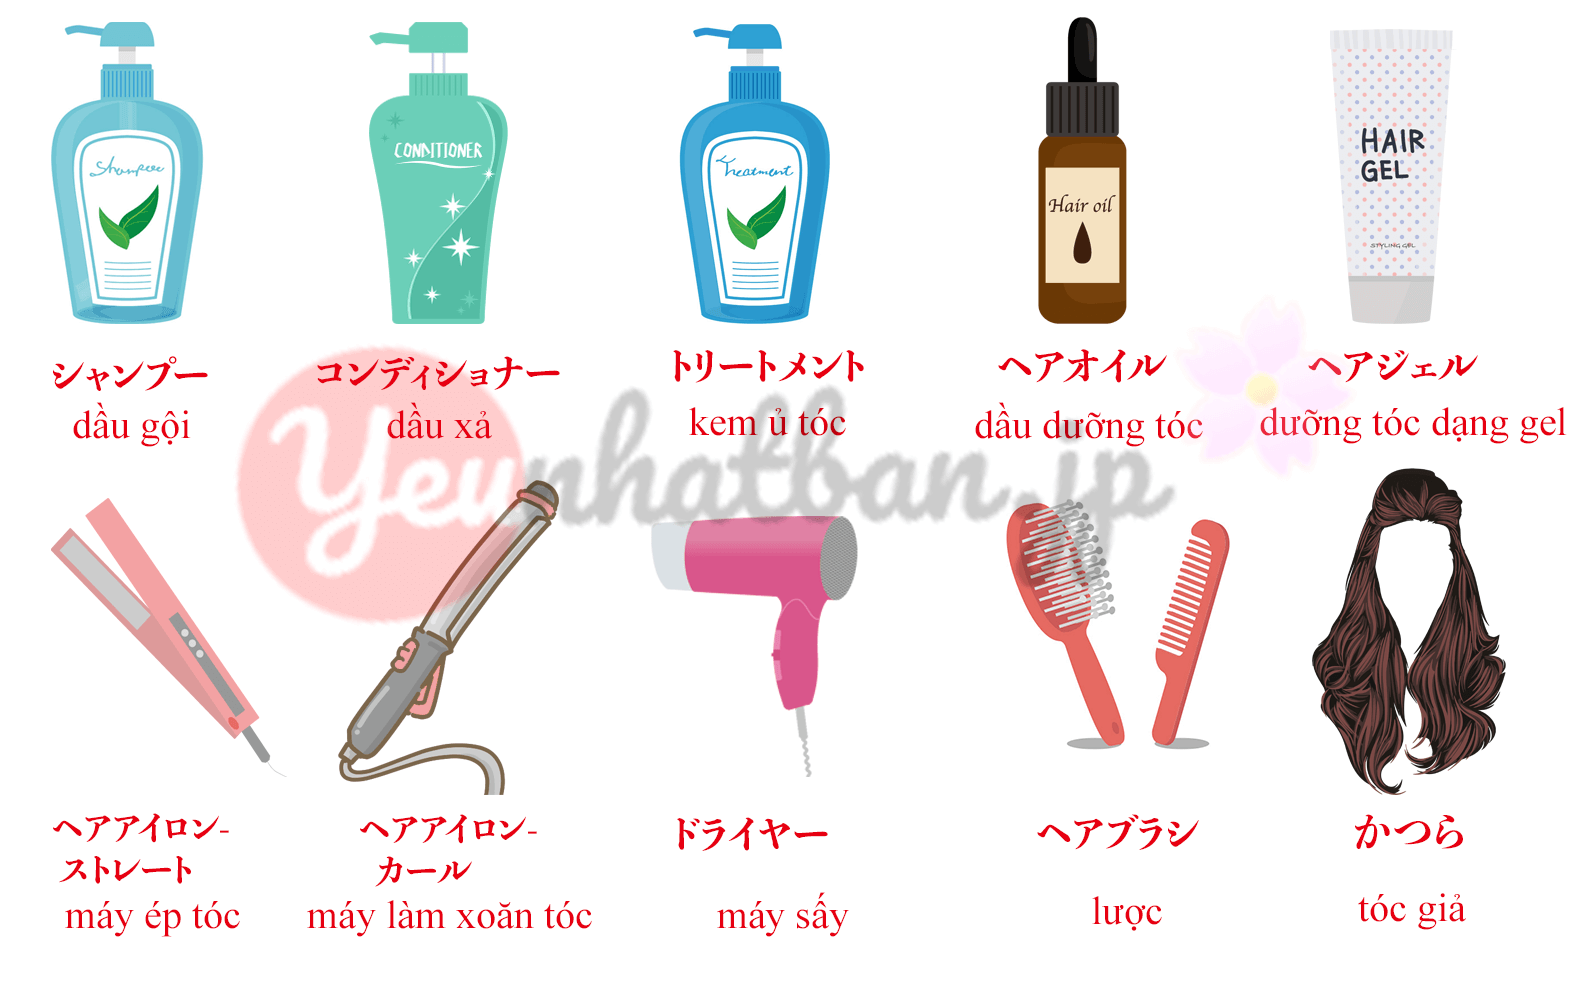 Tóc là một phần không thể thiếu trong đời sống hàng ngày của chúng ta. Tìm hiểu từ vựng tiếng Nhật liên quan đến tóc sẽ giúp bạn hiểu rõ hơn về sản phẩm và kiểu tóc phù hợp với bạn.